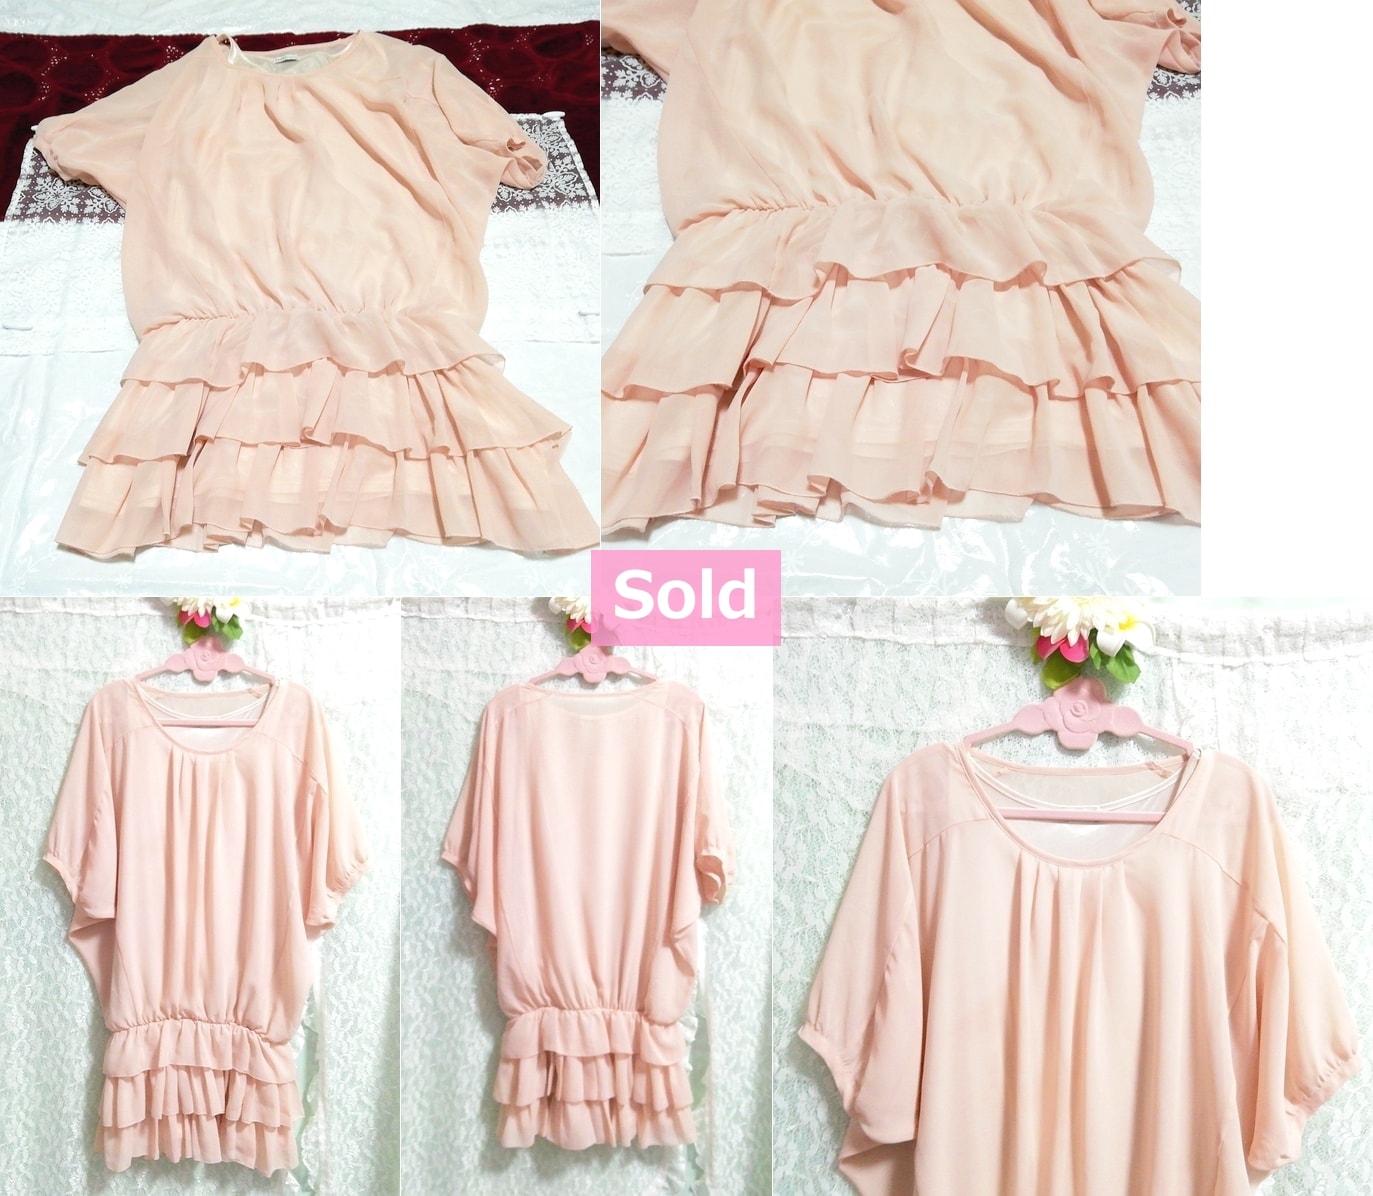 Pink chiffon tiered ruffle negligee nightgown dress short sleeve tunic, tunic, short sleeve, m size